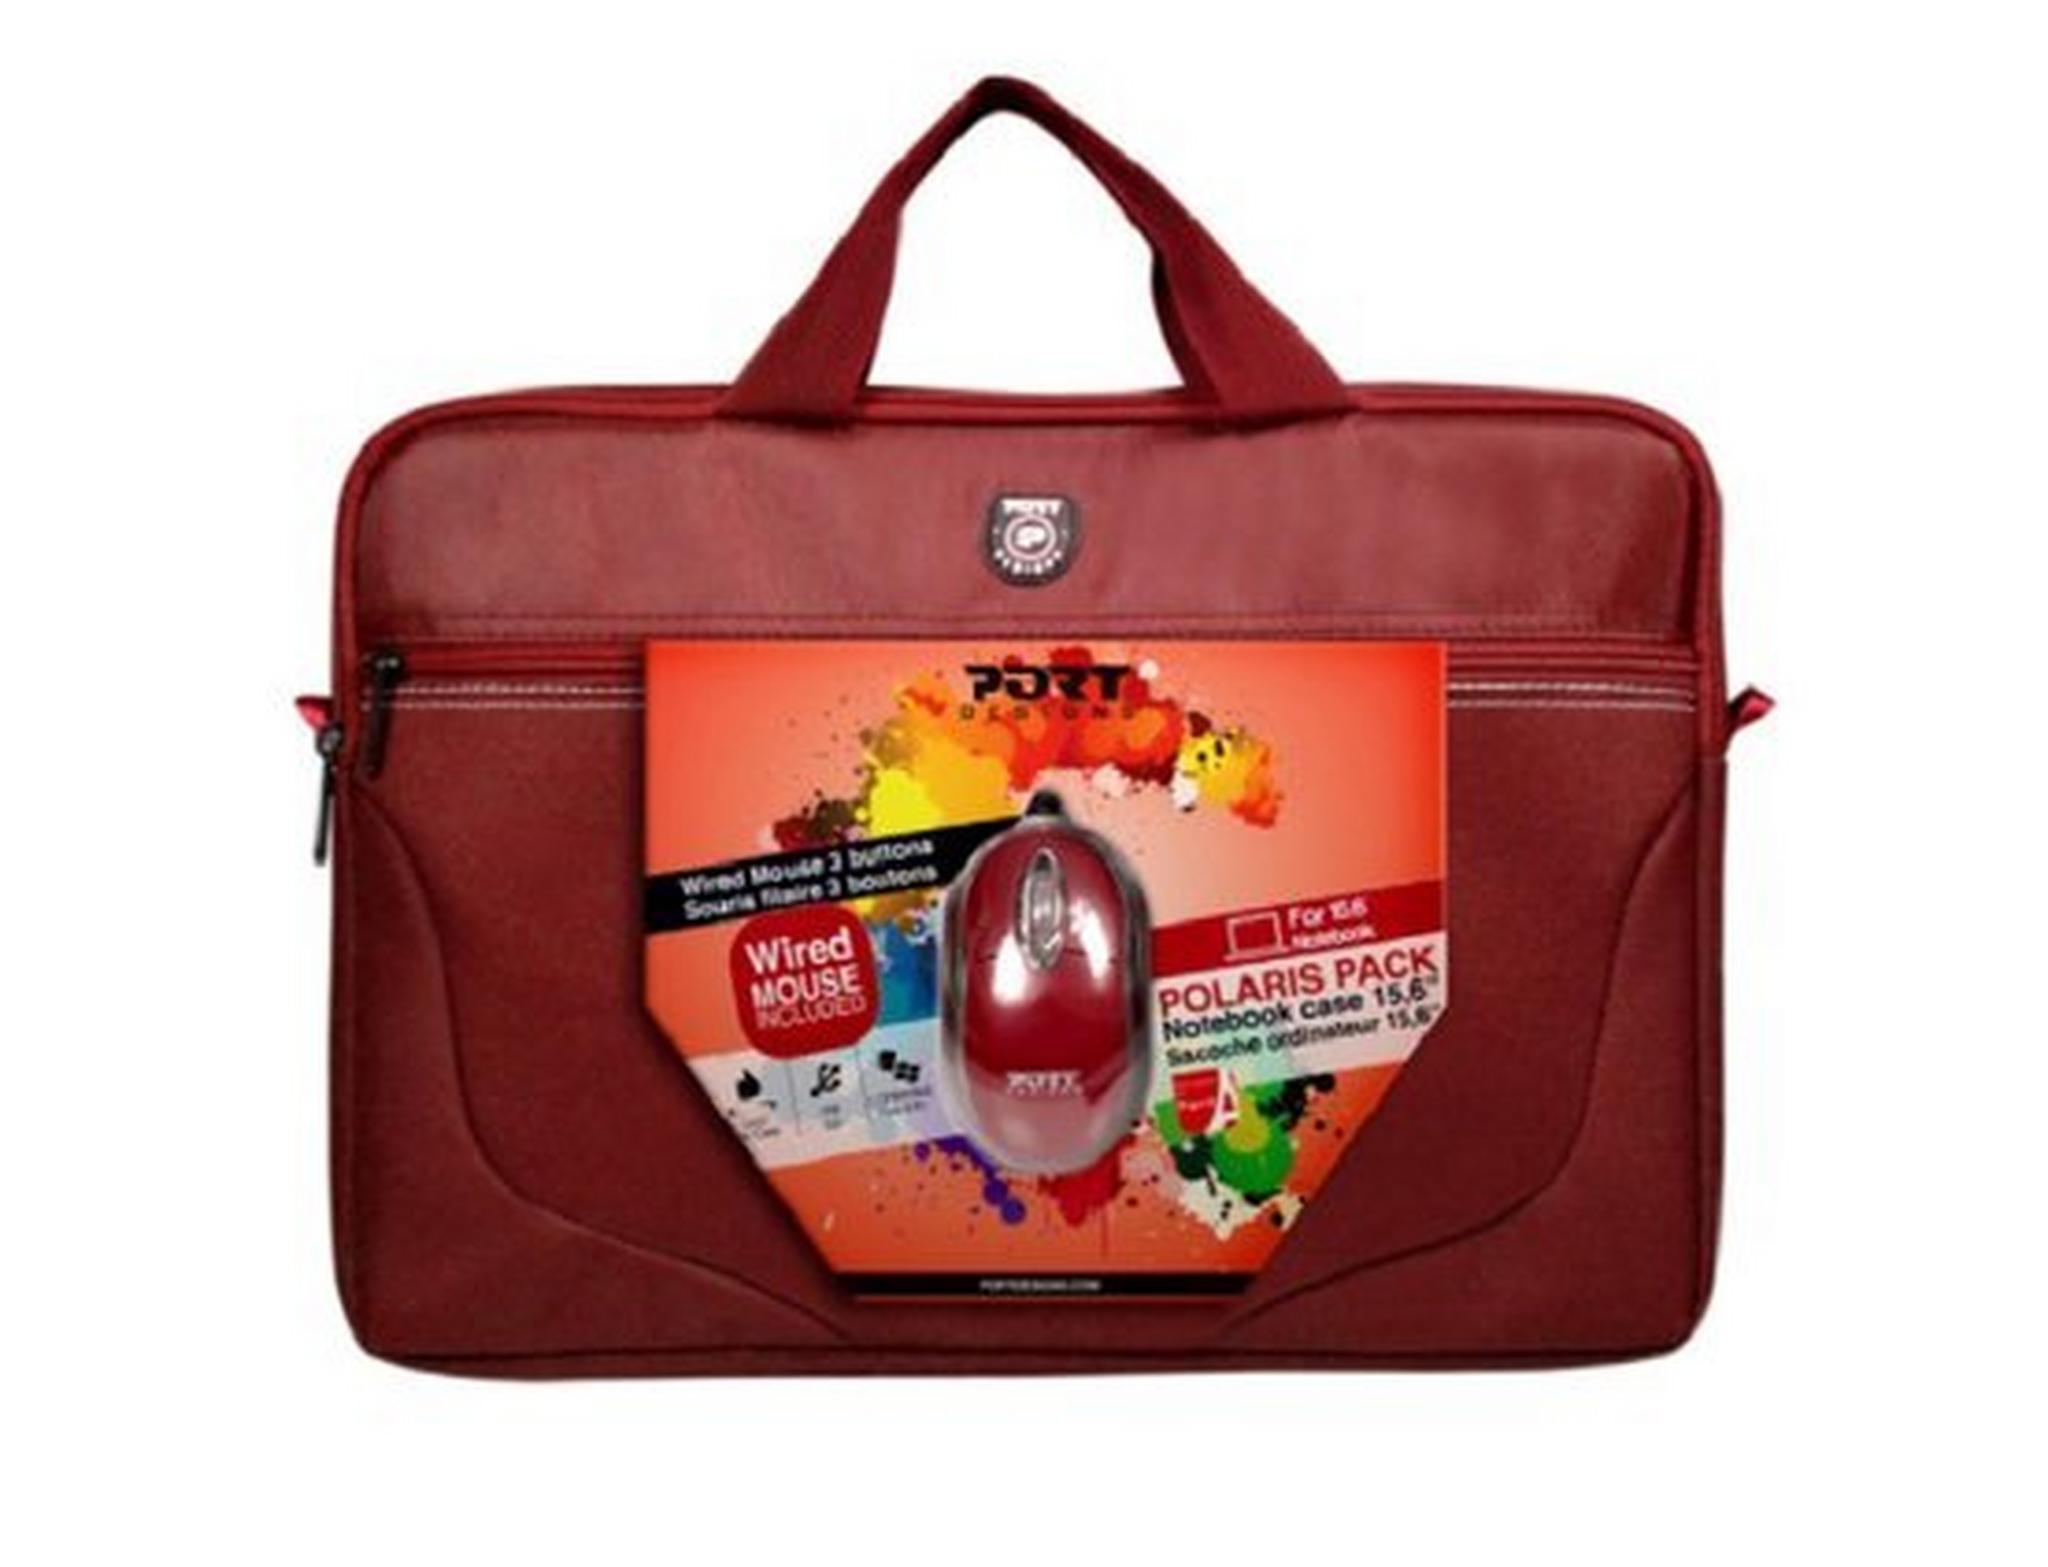 حقيبة اللابتوب بورت بولاريس مقاس 15 بوصة مع ماوس - أحمر